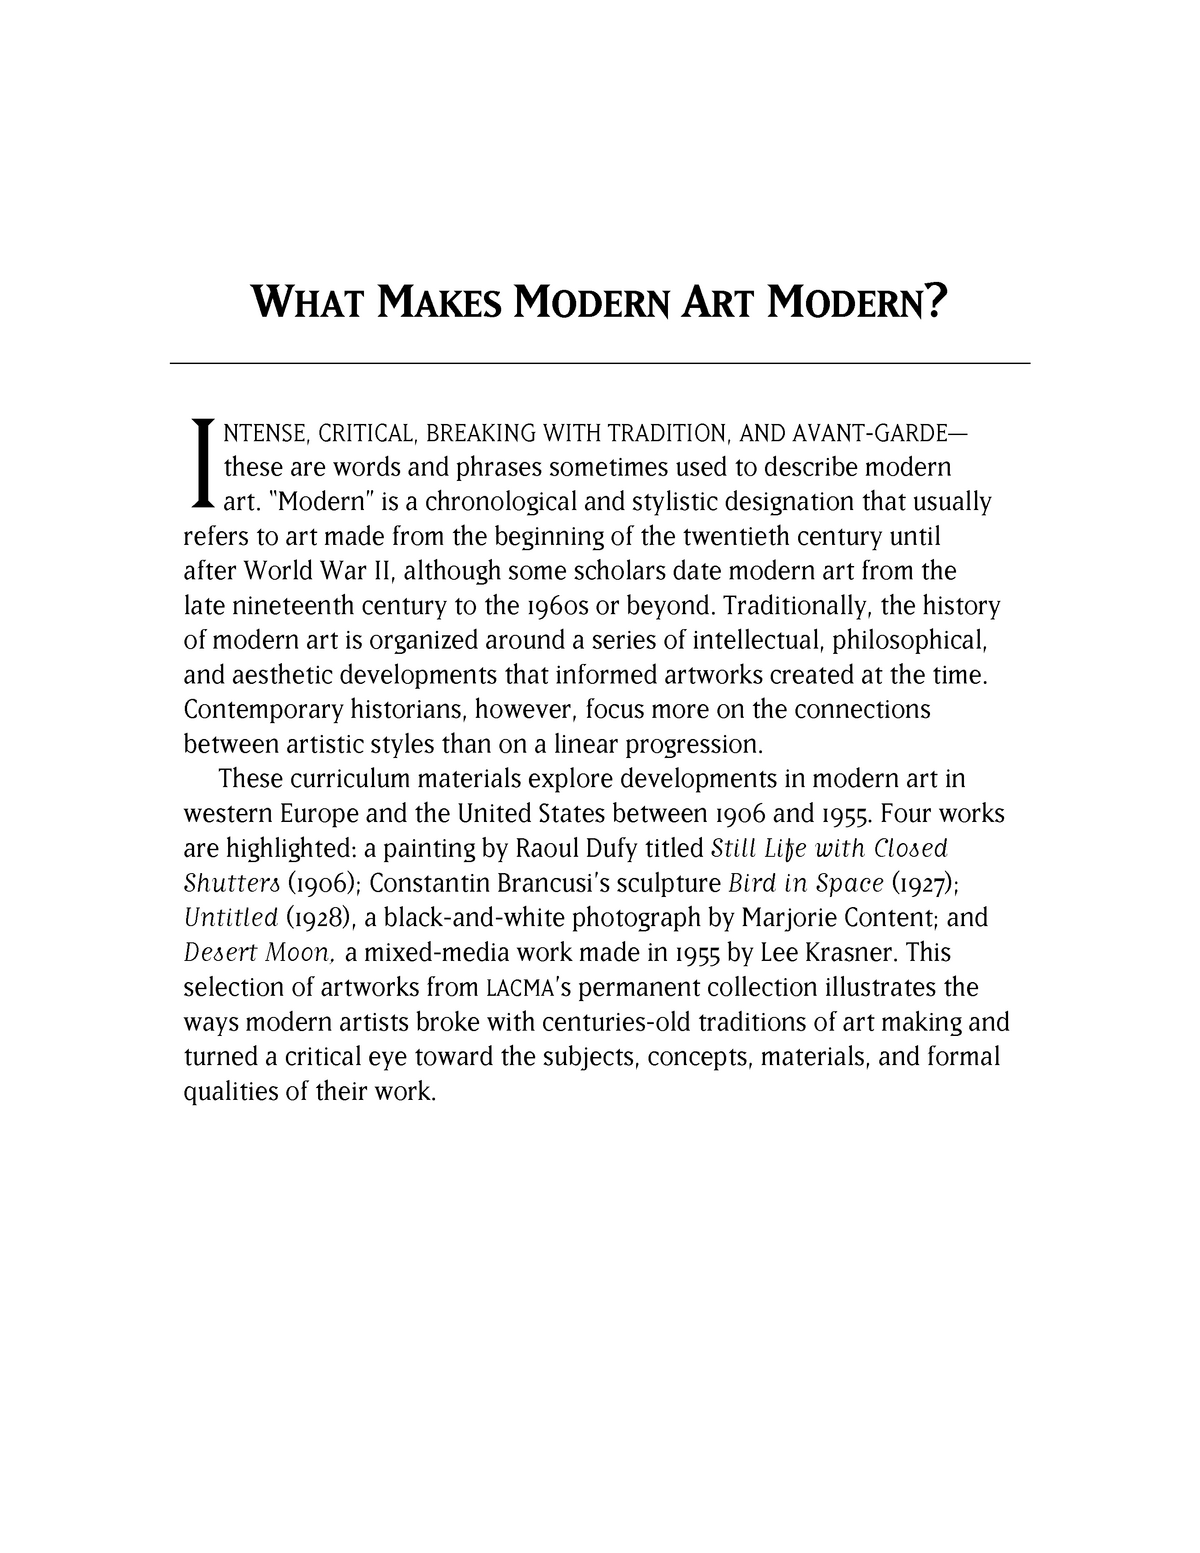 essay topics about modern art